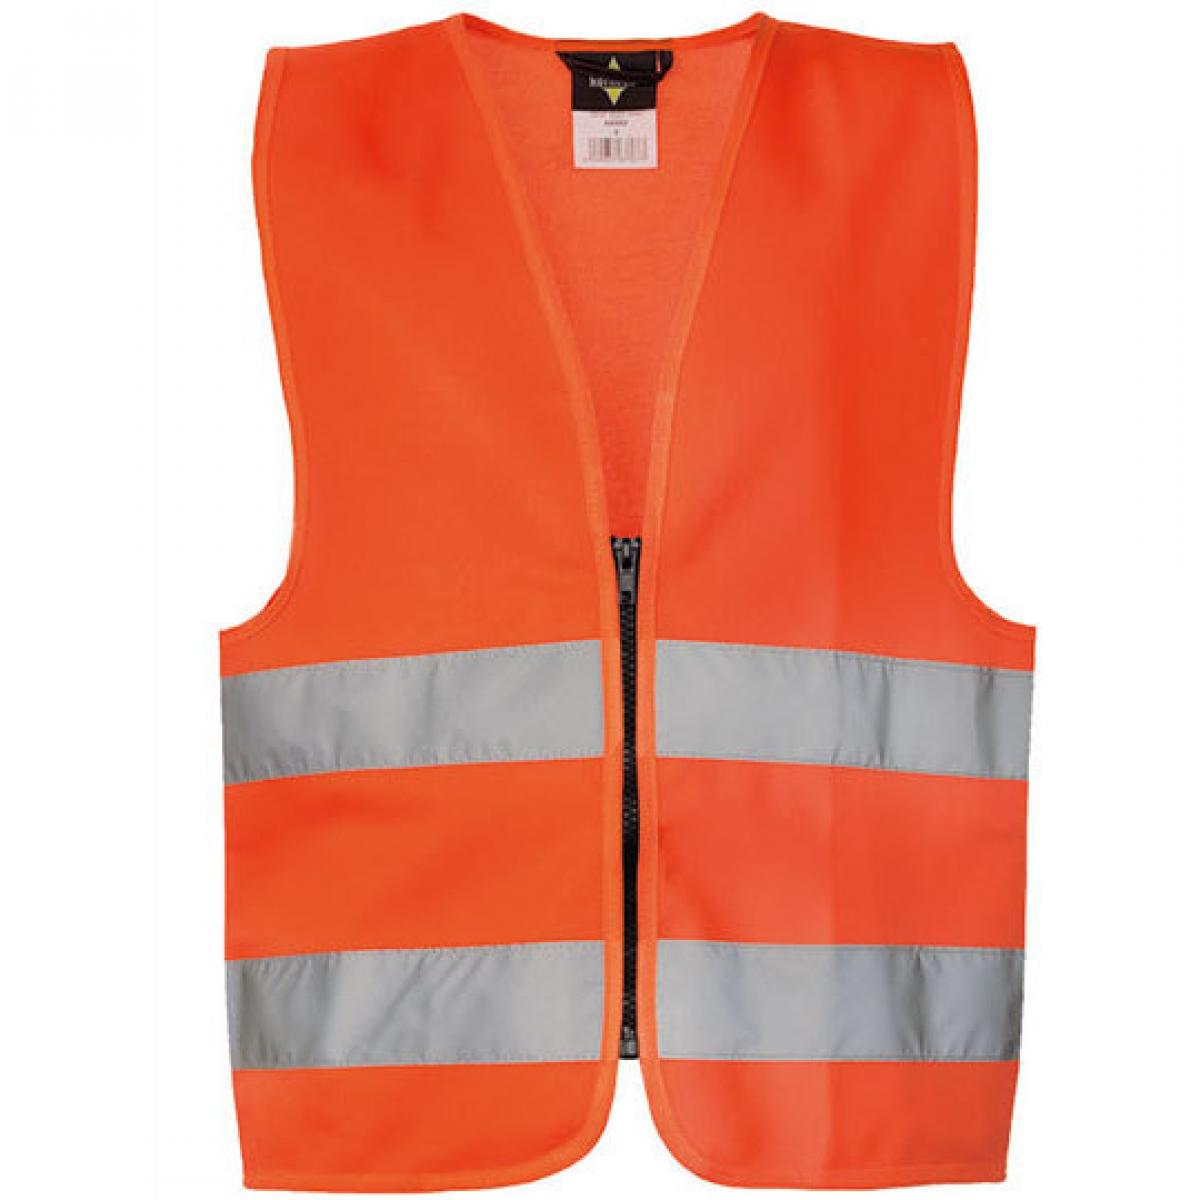 Hersteller: Korntex Herstellernummer: KWRX Artikelbezeichnung: Kinder Safety Vest for Kids with Zipper EN1150 Farbe: Signal Orange